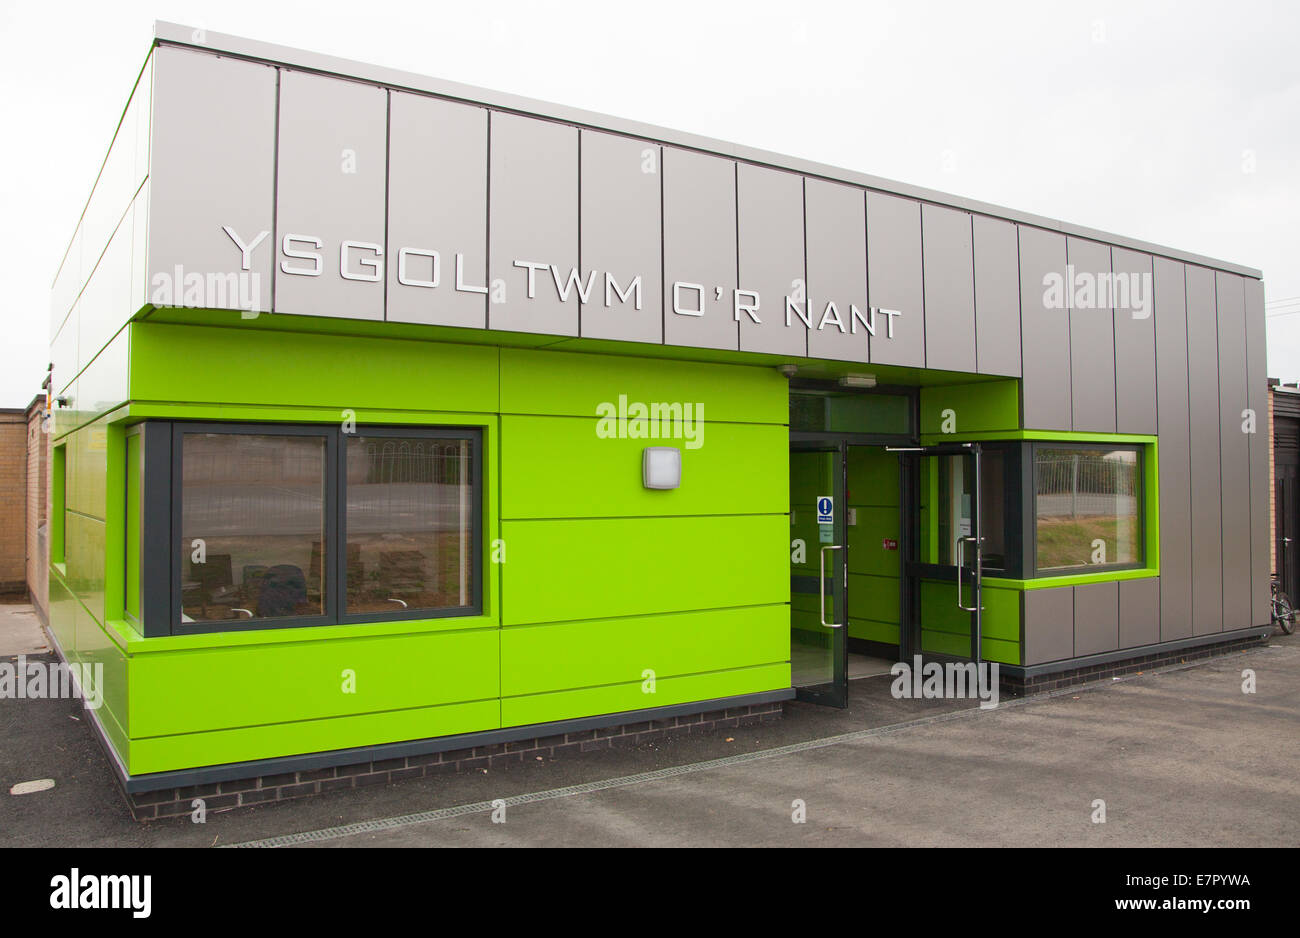 Ysgol Twm o'r nant, Denbigh. L'école primaire nouveau bâtiment d'accueil prises à l'ouverture officielle Banque D'Images